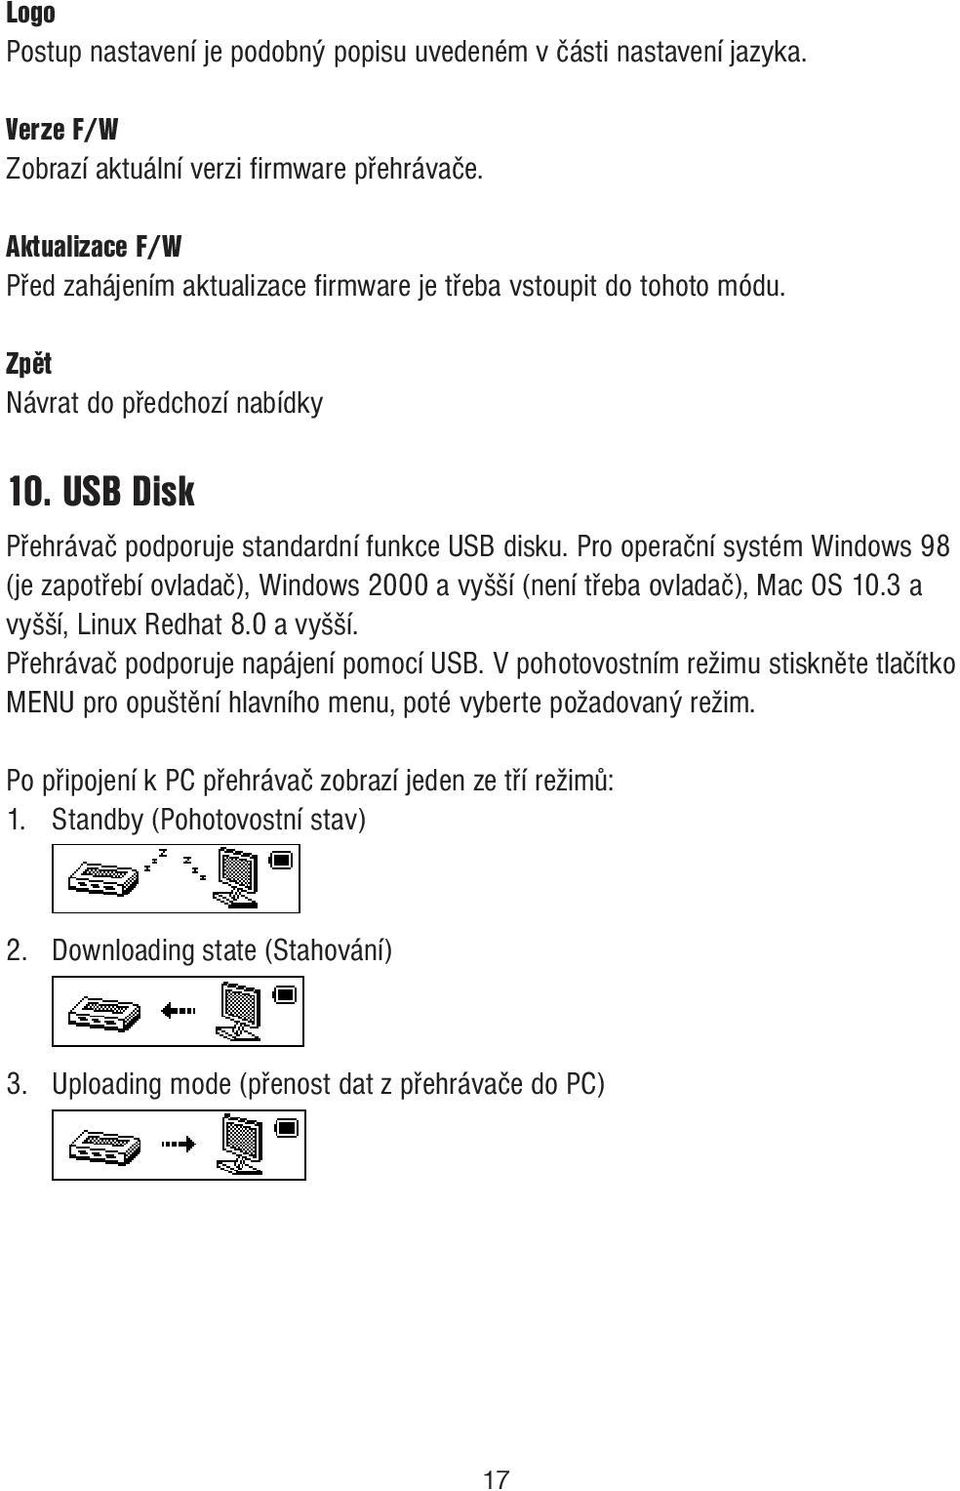 Pro operační systém Windows 98 (je zapotřebí ovladač), Windows 2000 a vyšší (není třeba ovladač), Mac OS 10.3 a vyšší, Linux Redhat 8.0 a vyšší. Přehrávač podporuje napájení pomocí USB.